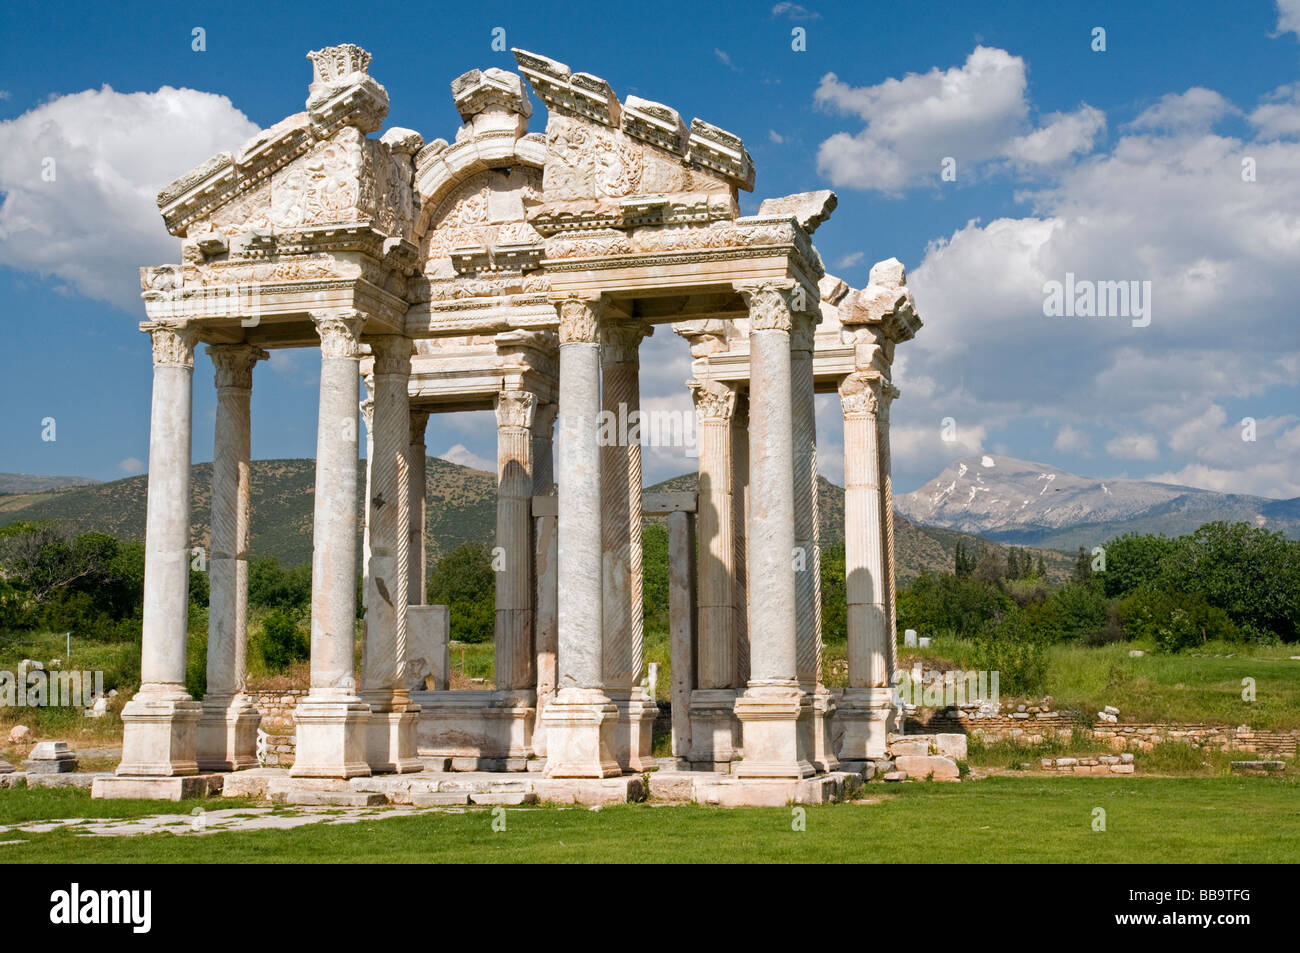 Tetrapylon Gate of Aphrodisias ancient city, Turkey Stock Photo